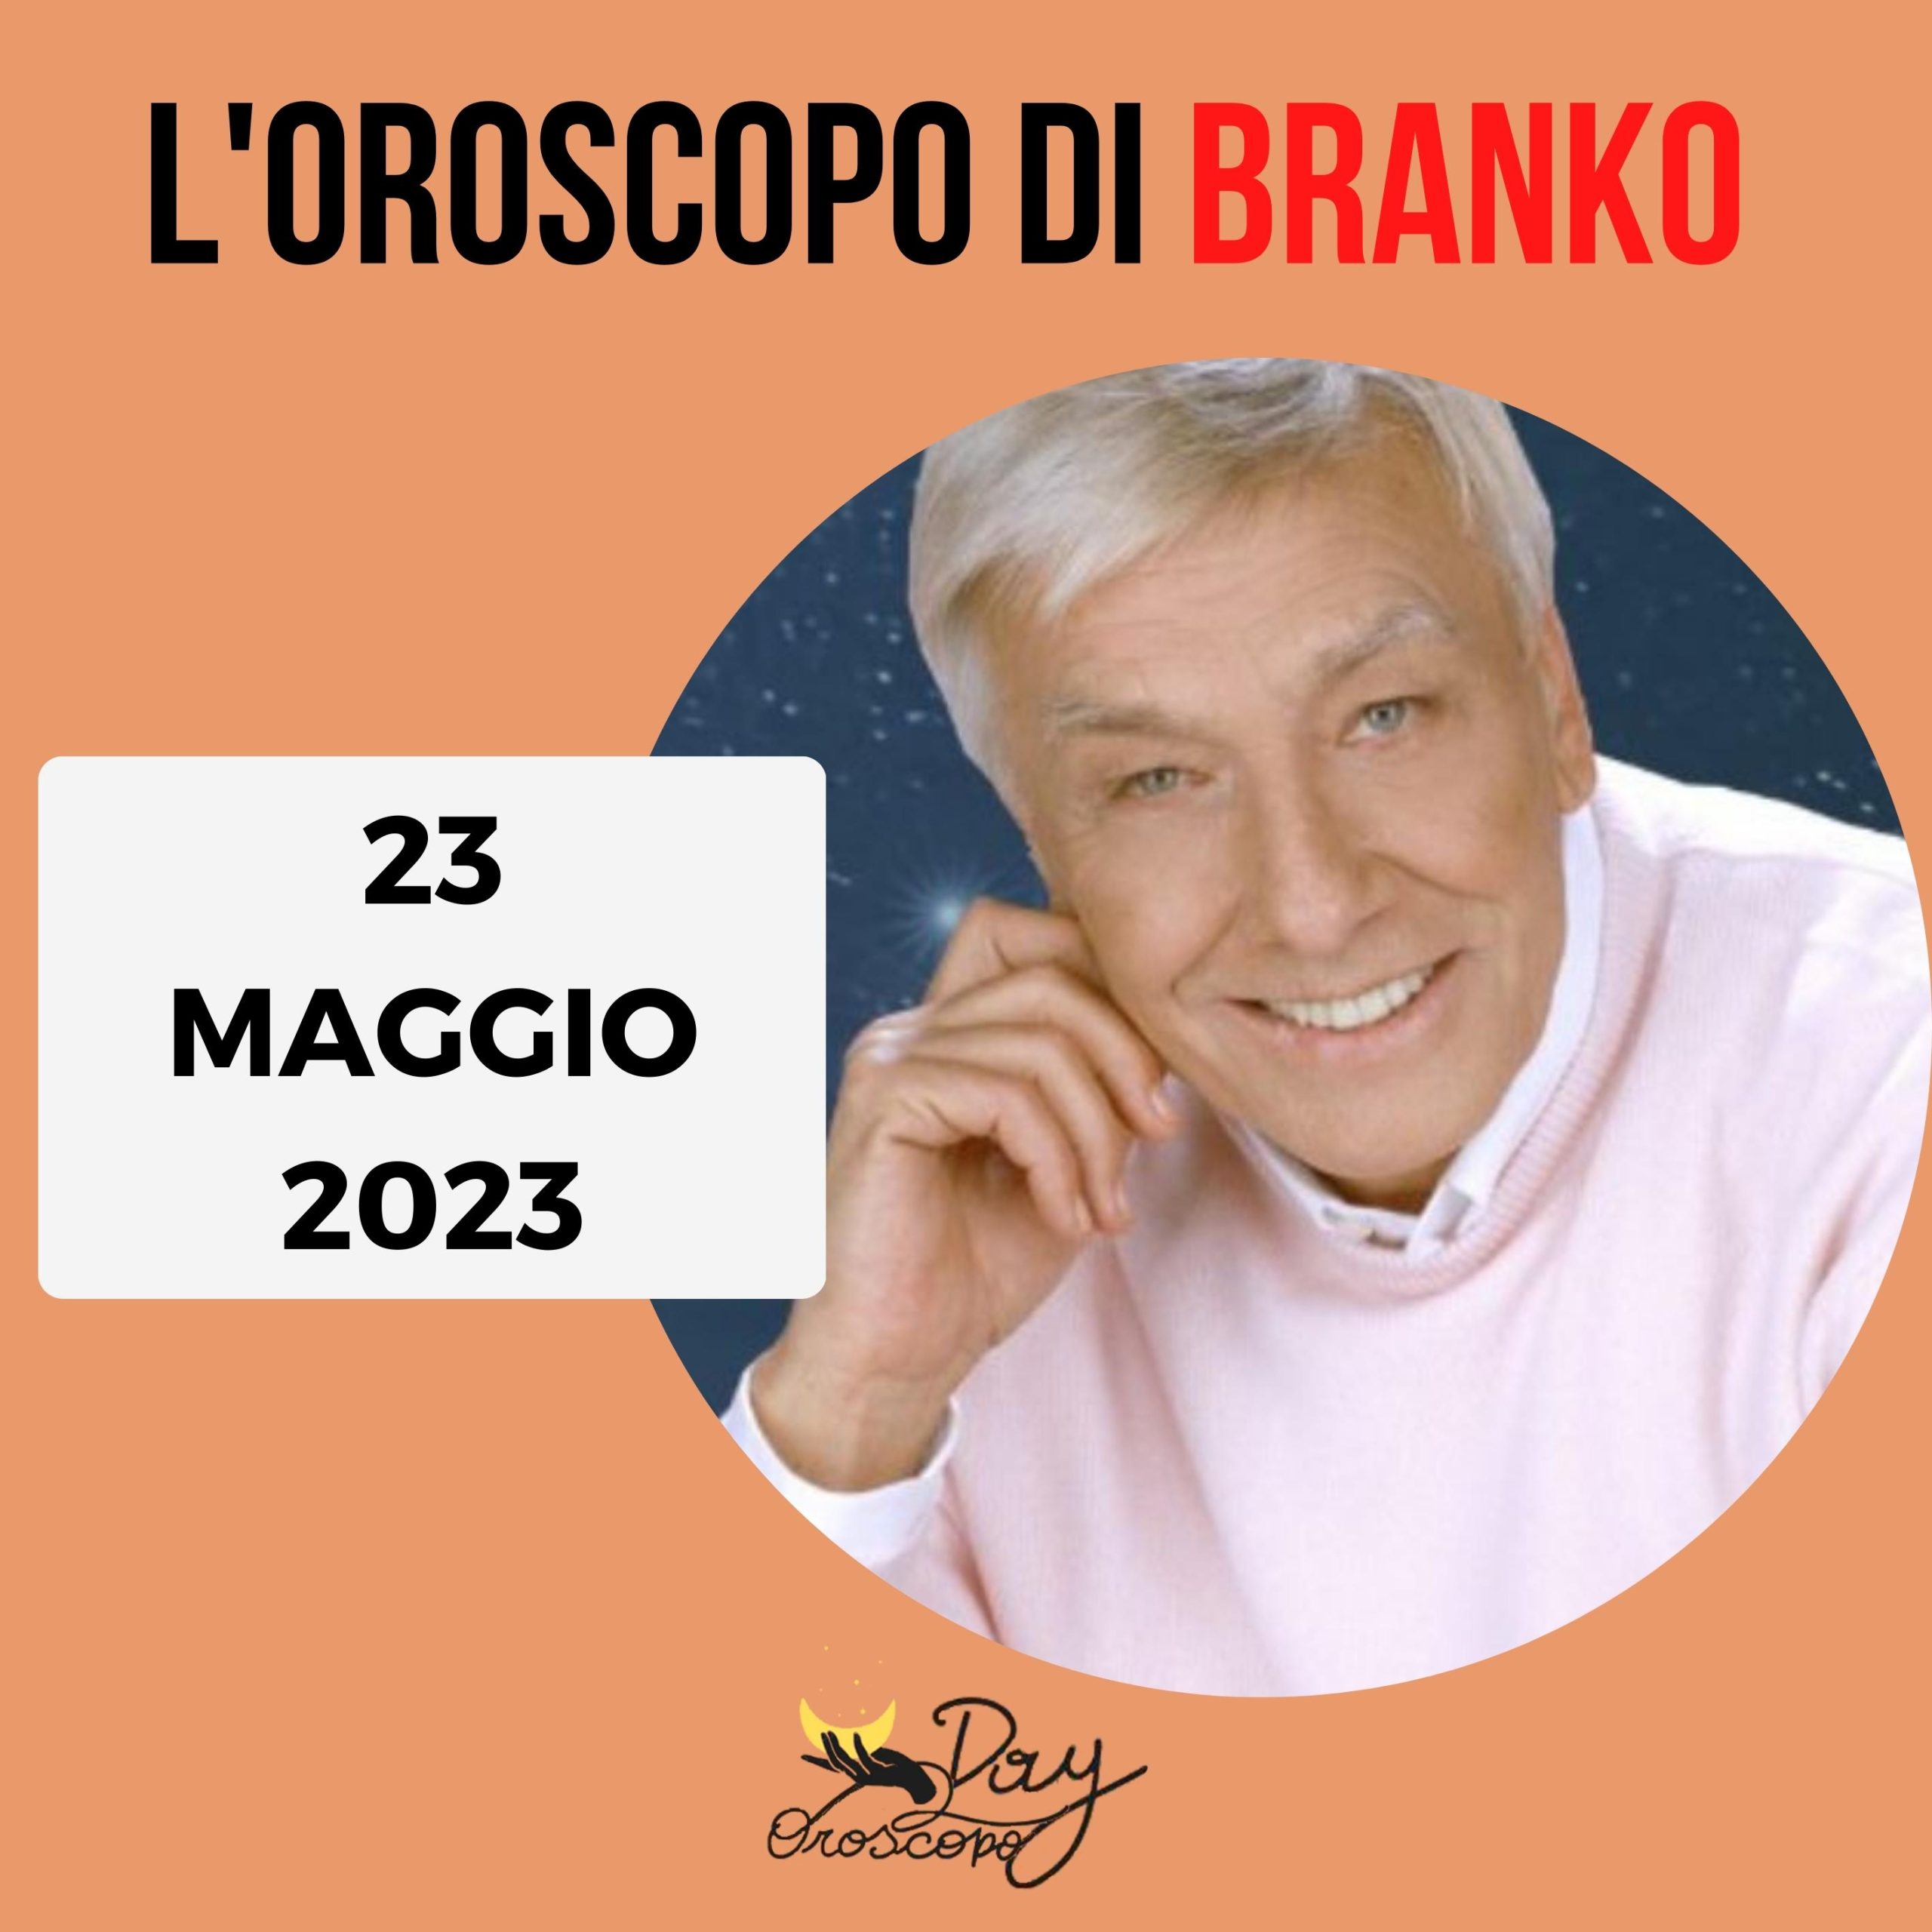 Oroscopo oggi domani Branko 23 maggio 2023